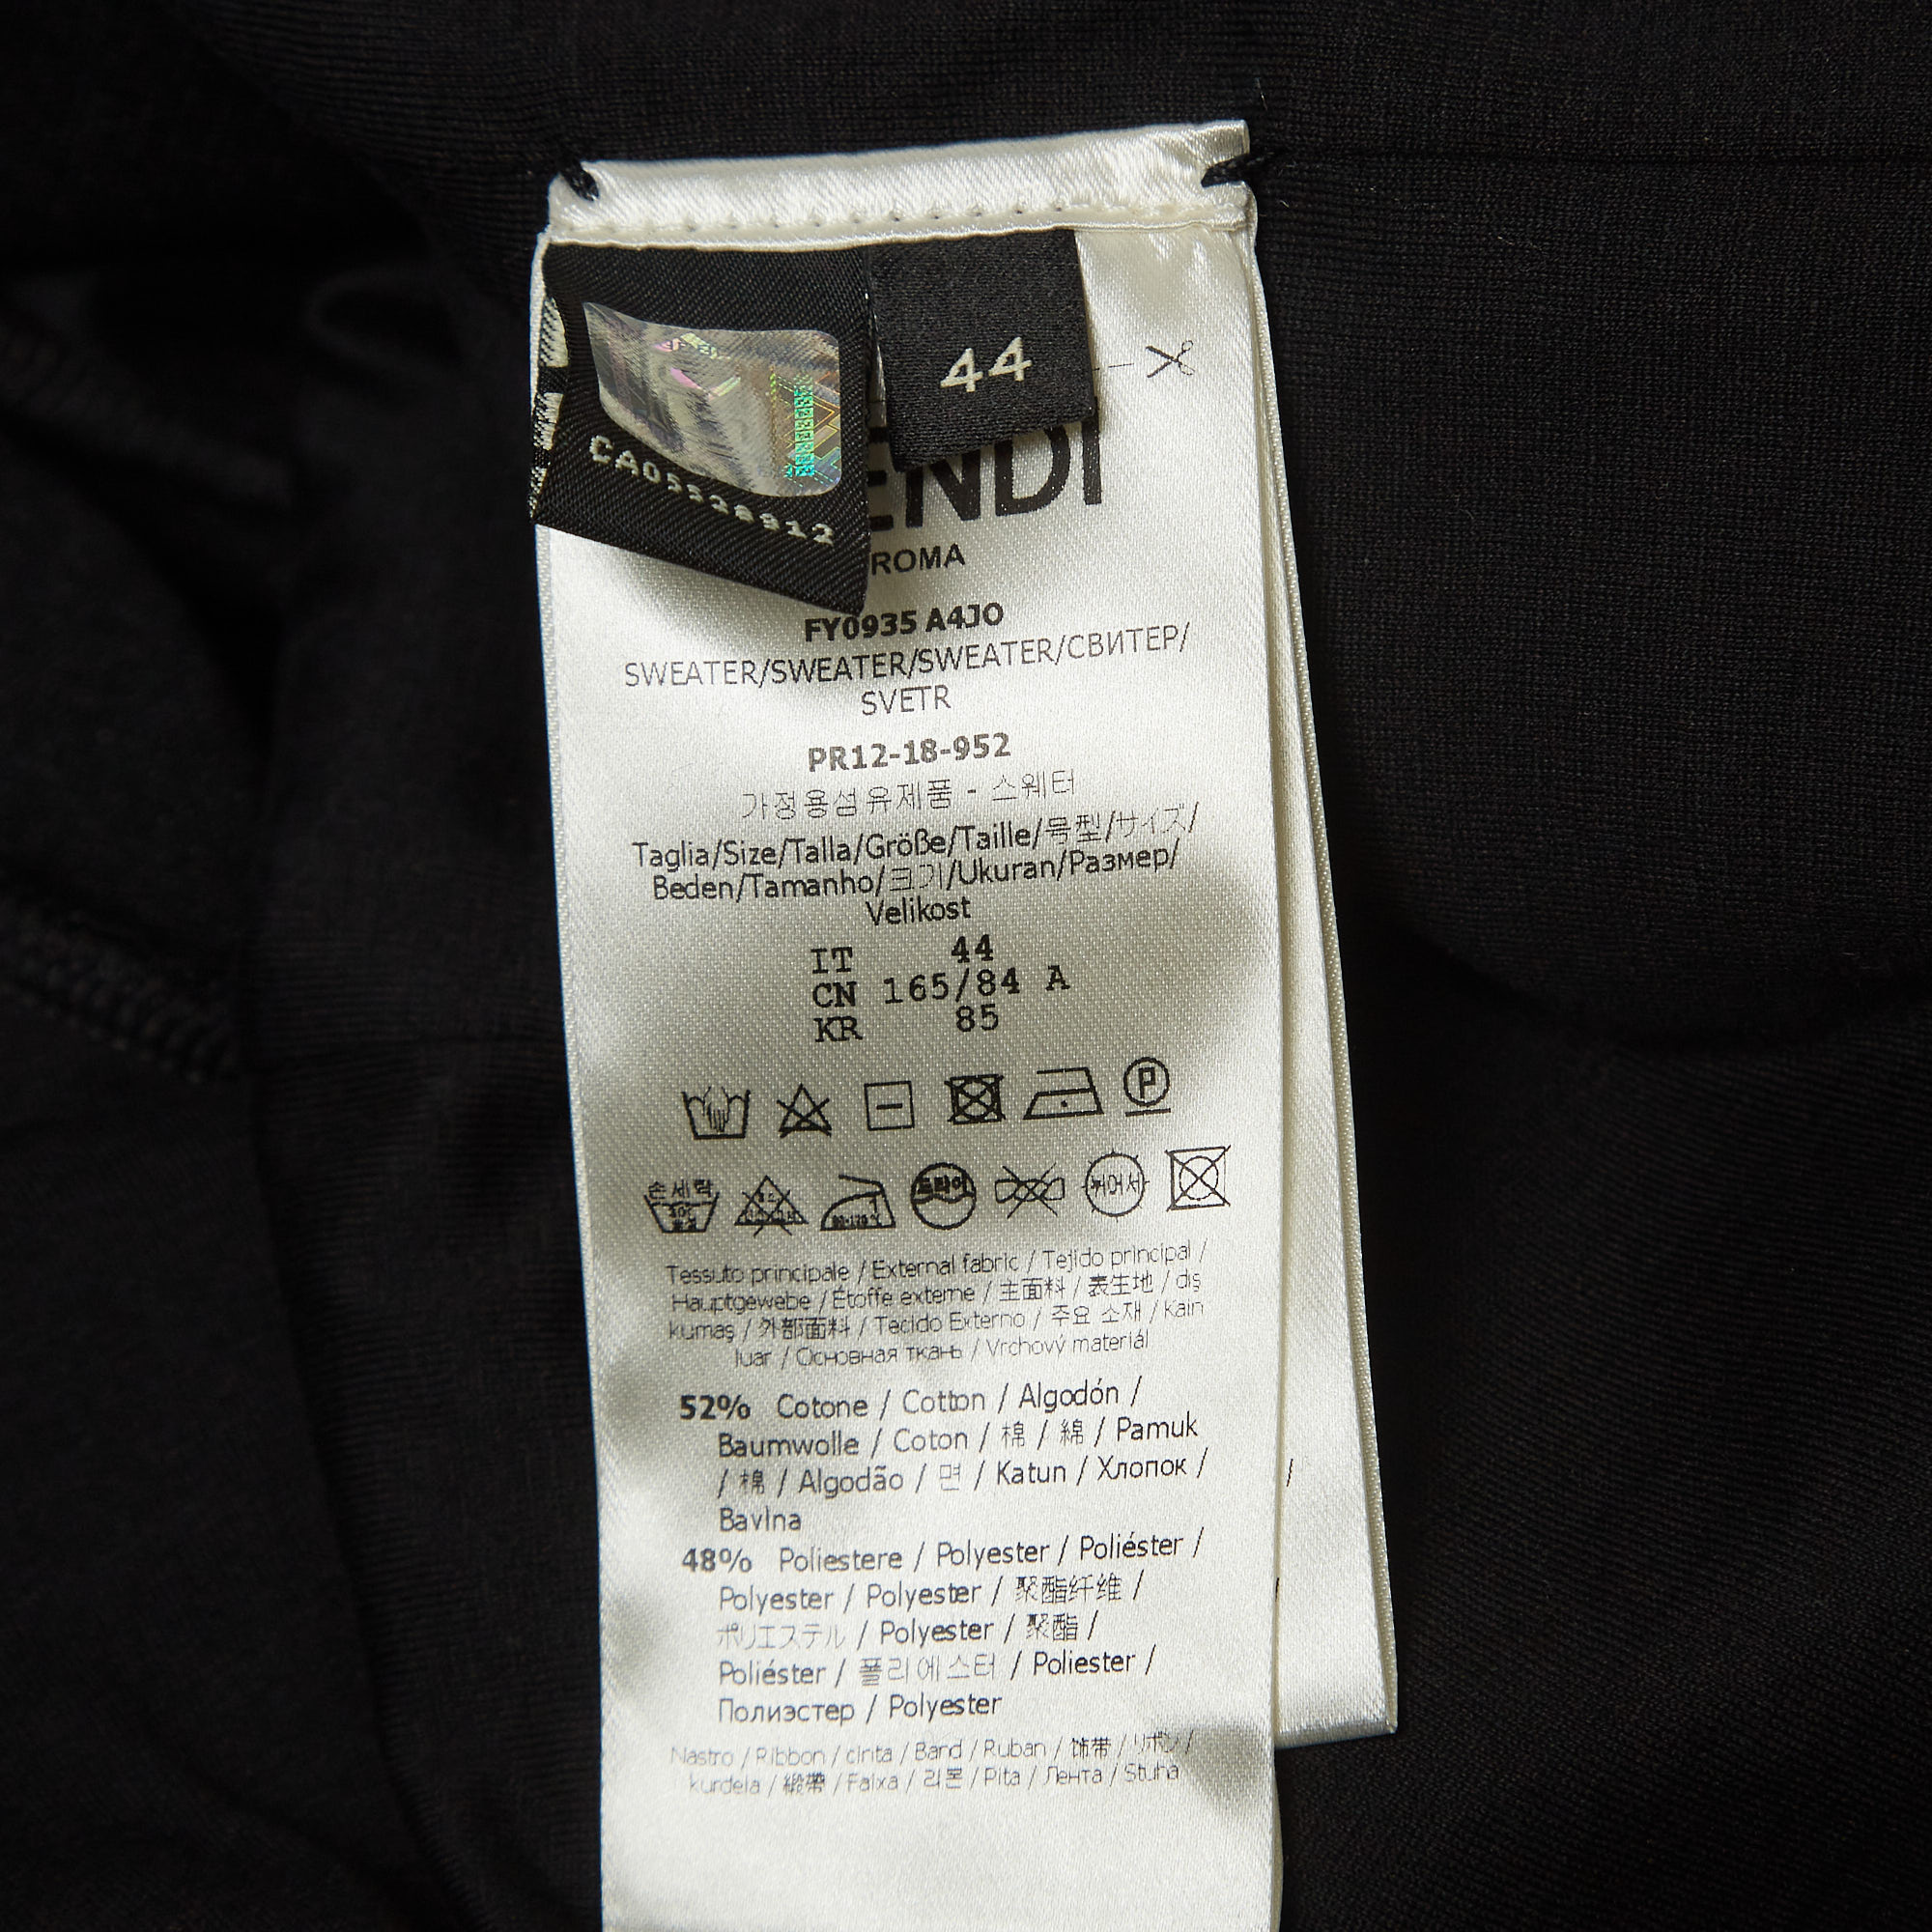 Fendi Black Knit Side Logo Tape Zip Front Jacket XS